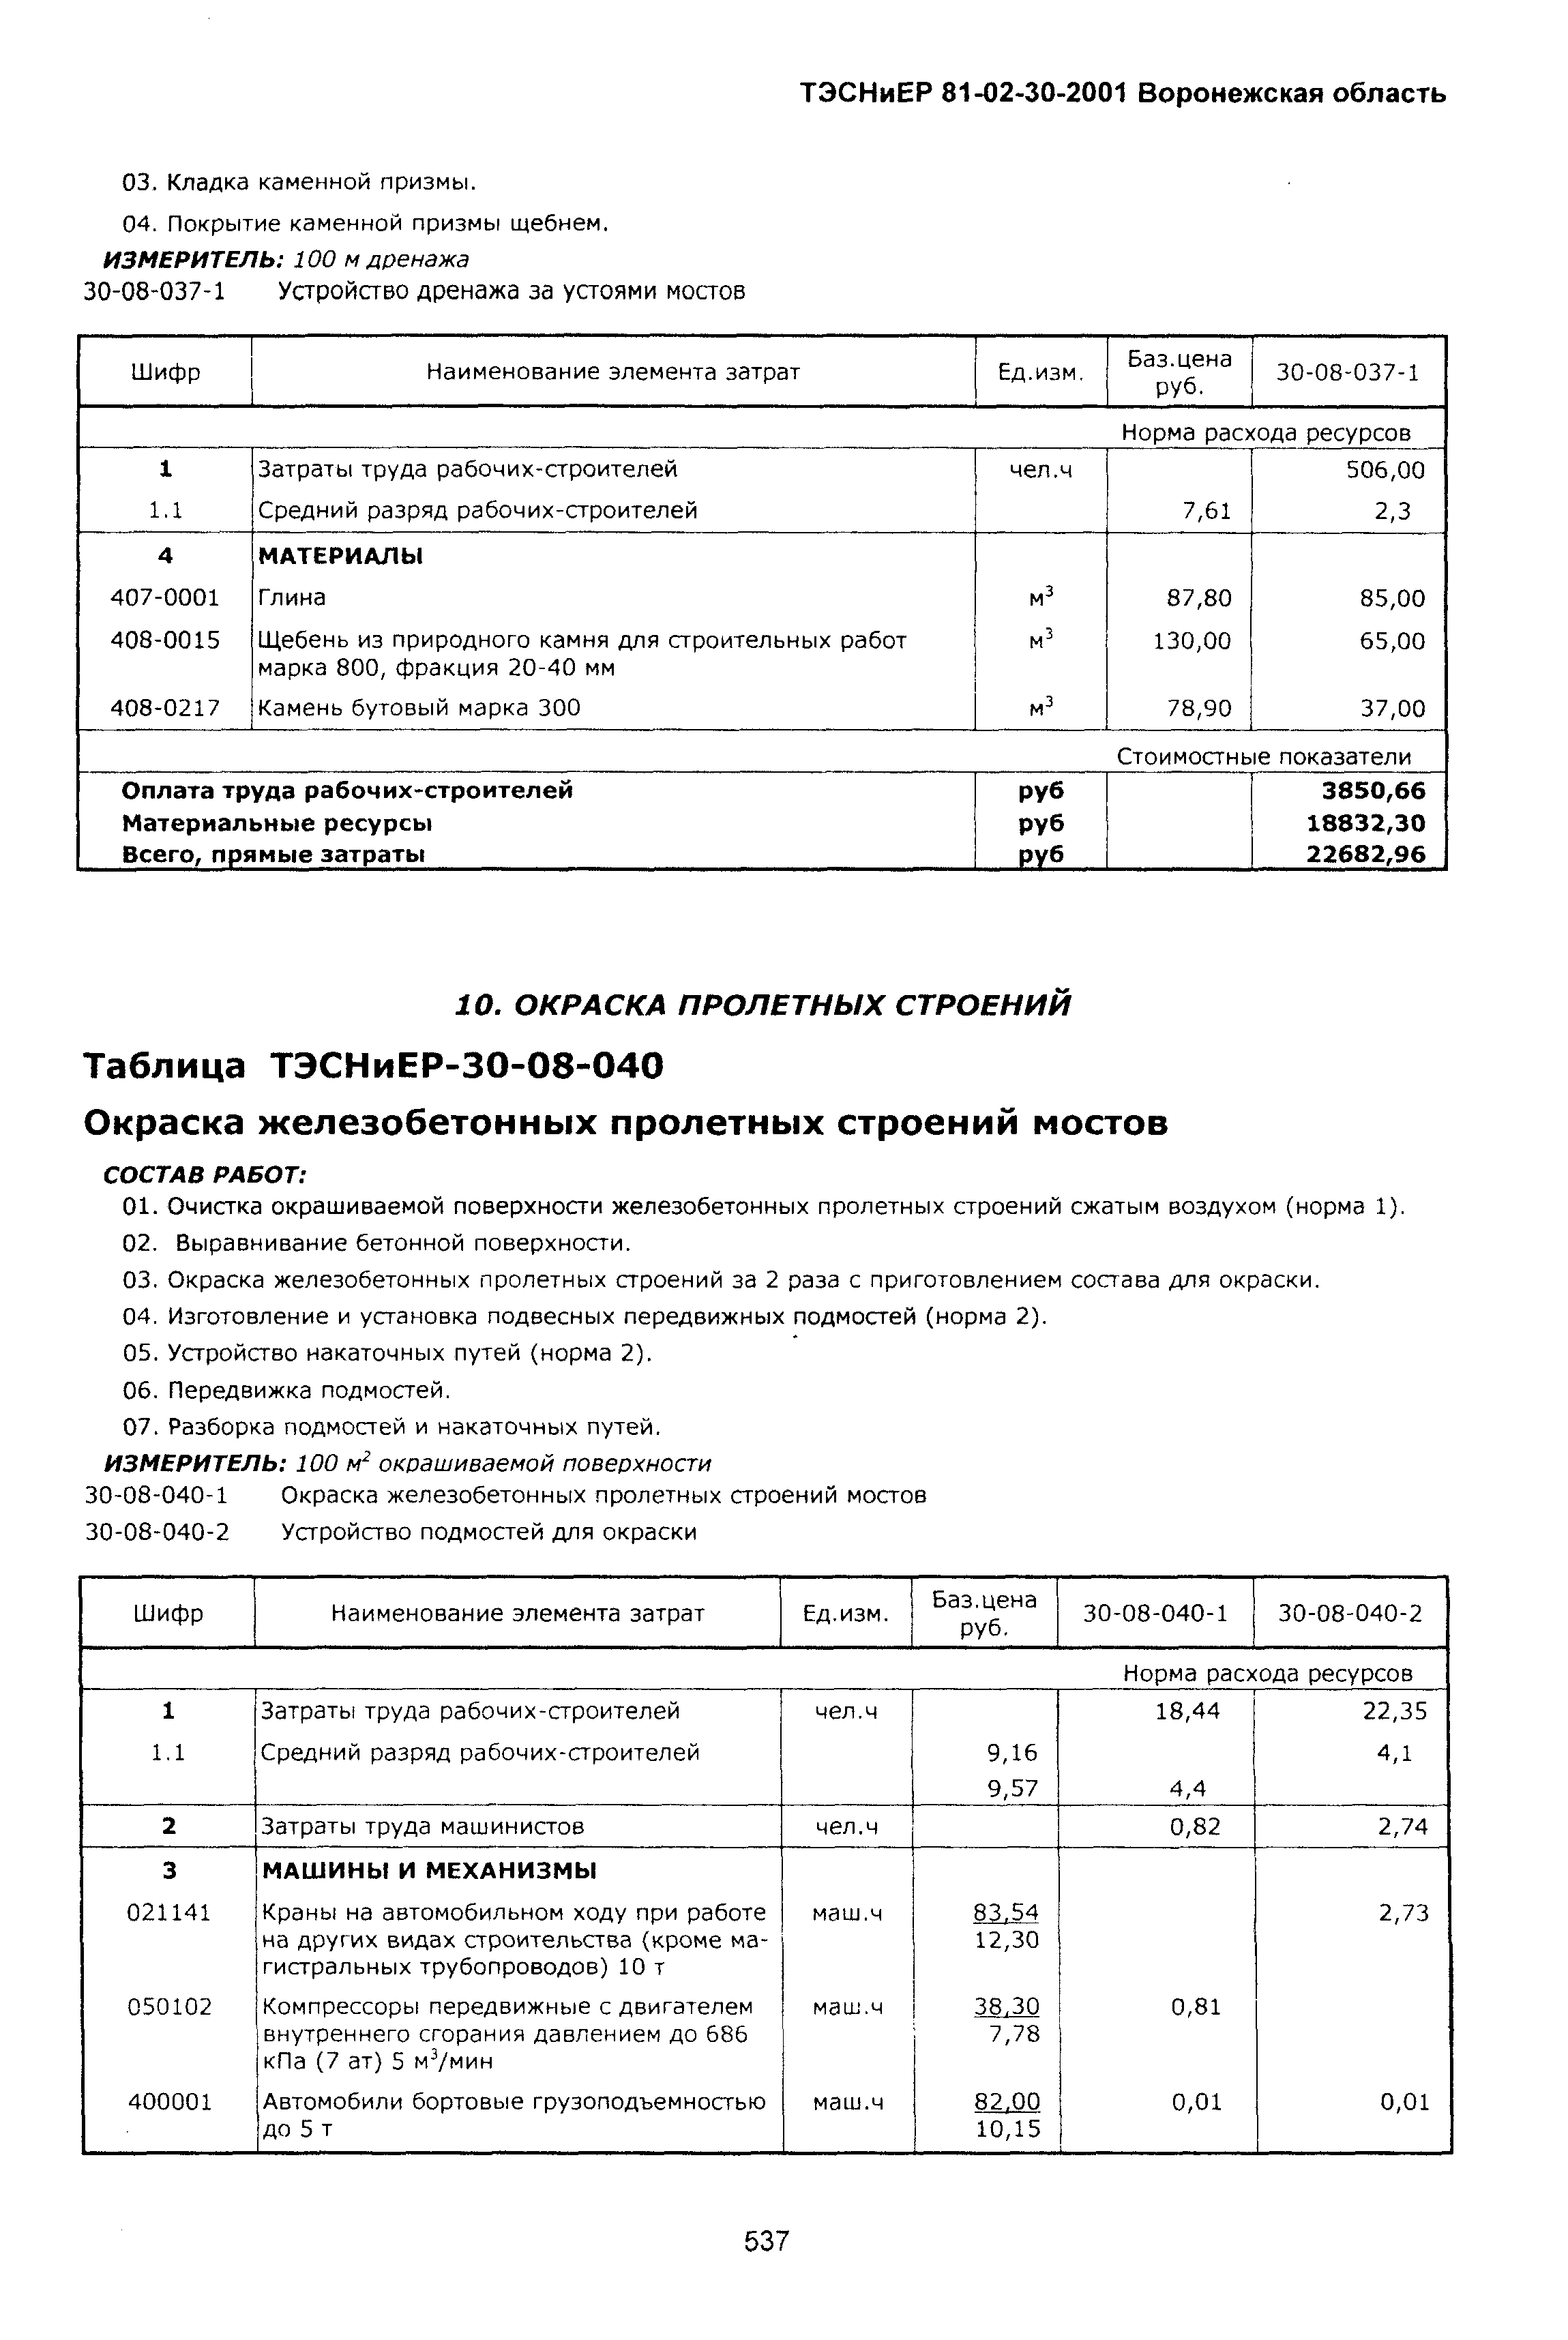 ТЭСНиЕР Воронежская область 81-02-30-2001